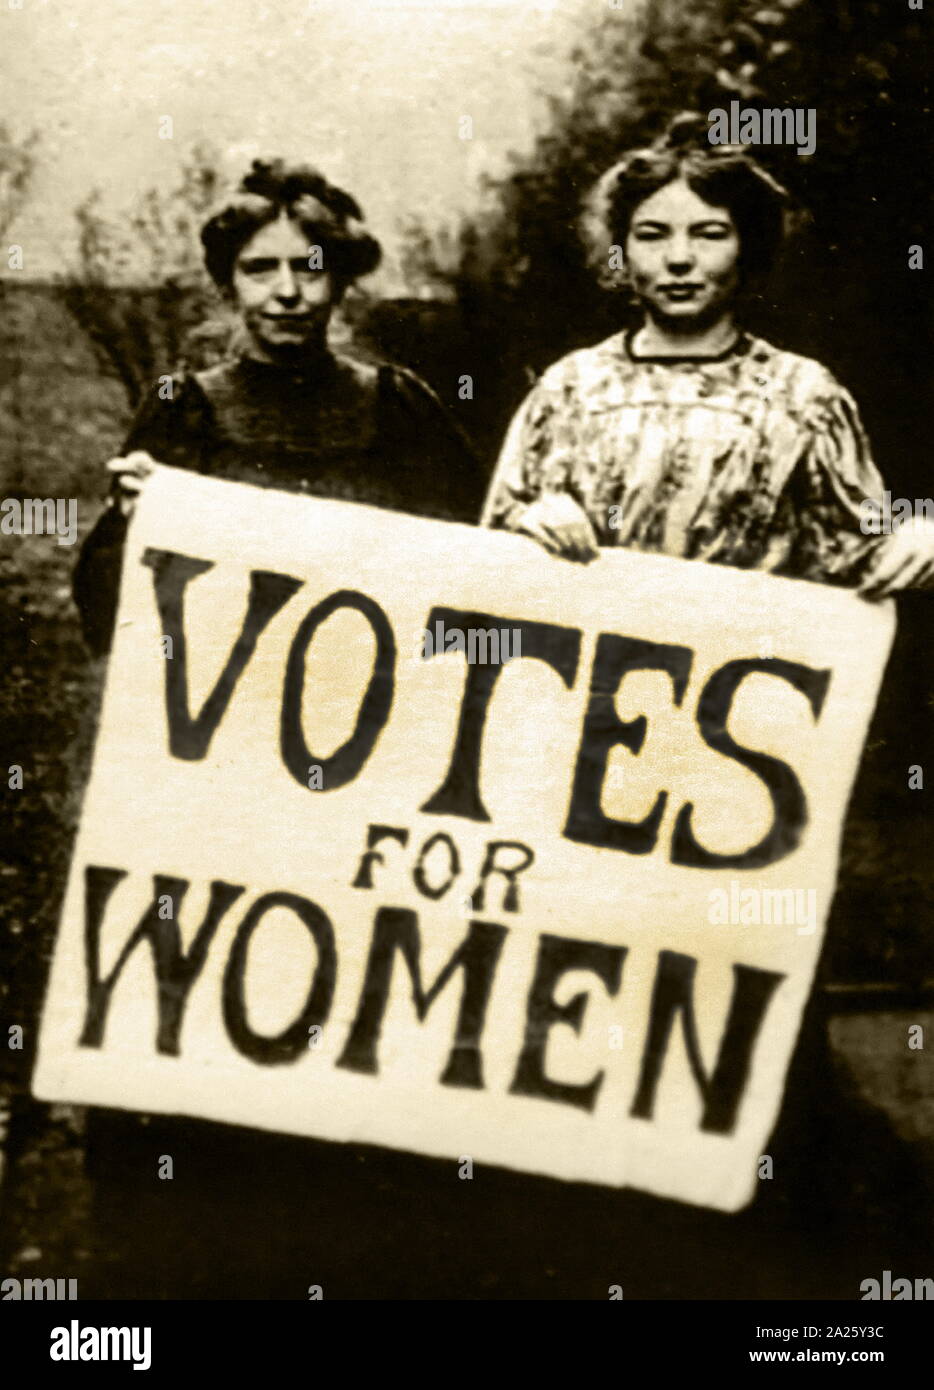 Photographie de suffragettes, protestant en Grande-Bretagne. Une suffragette était membre d'organisations de femmes au début du xxe siècle qui, sous la bannière "vote des femmes", a lutté pour le droit de vote dans les élections, connu comme le vote des femmes. Banque D'Images